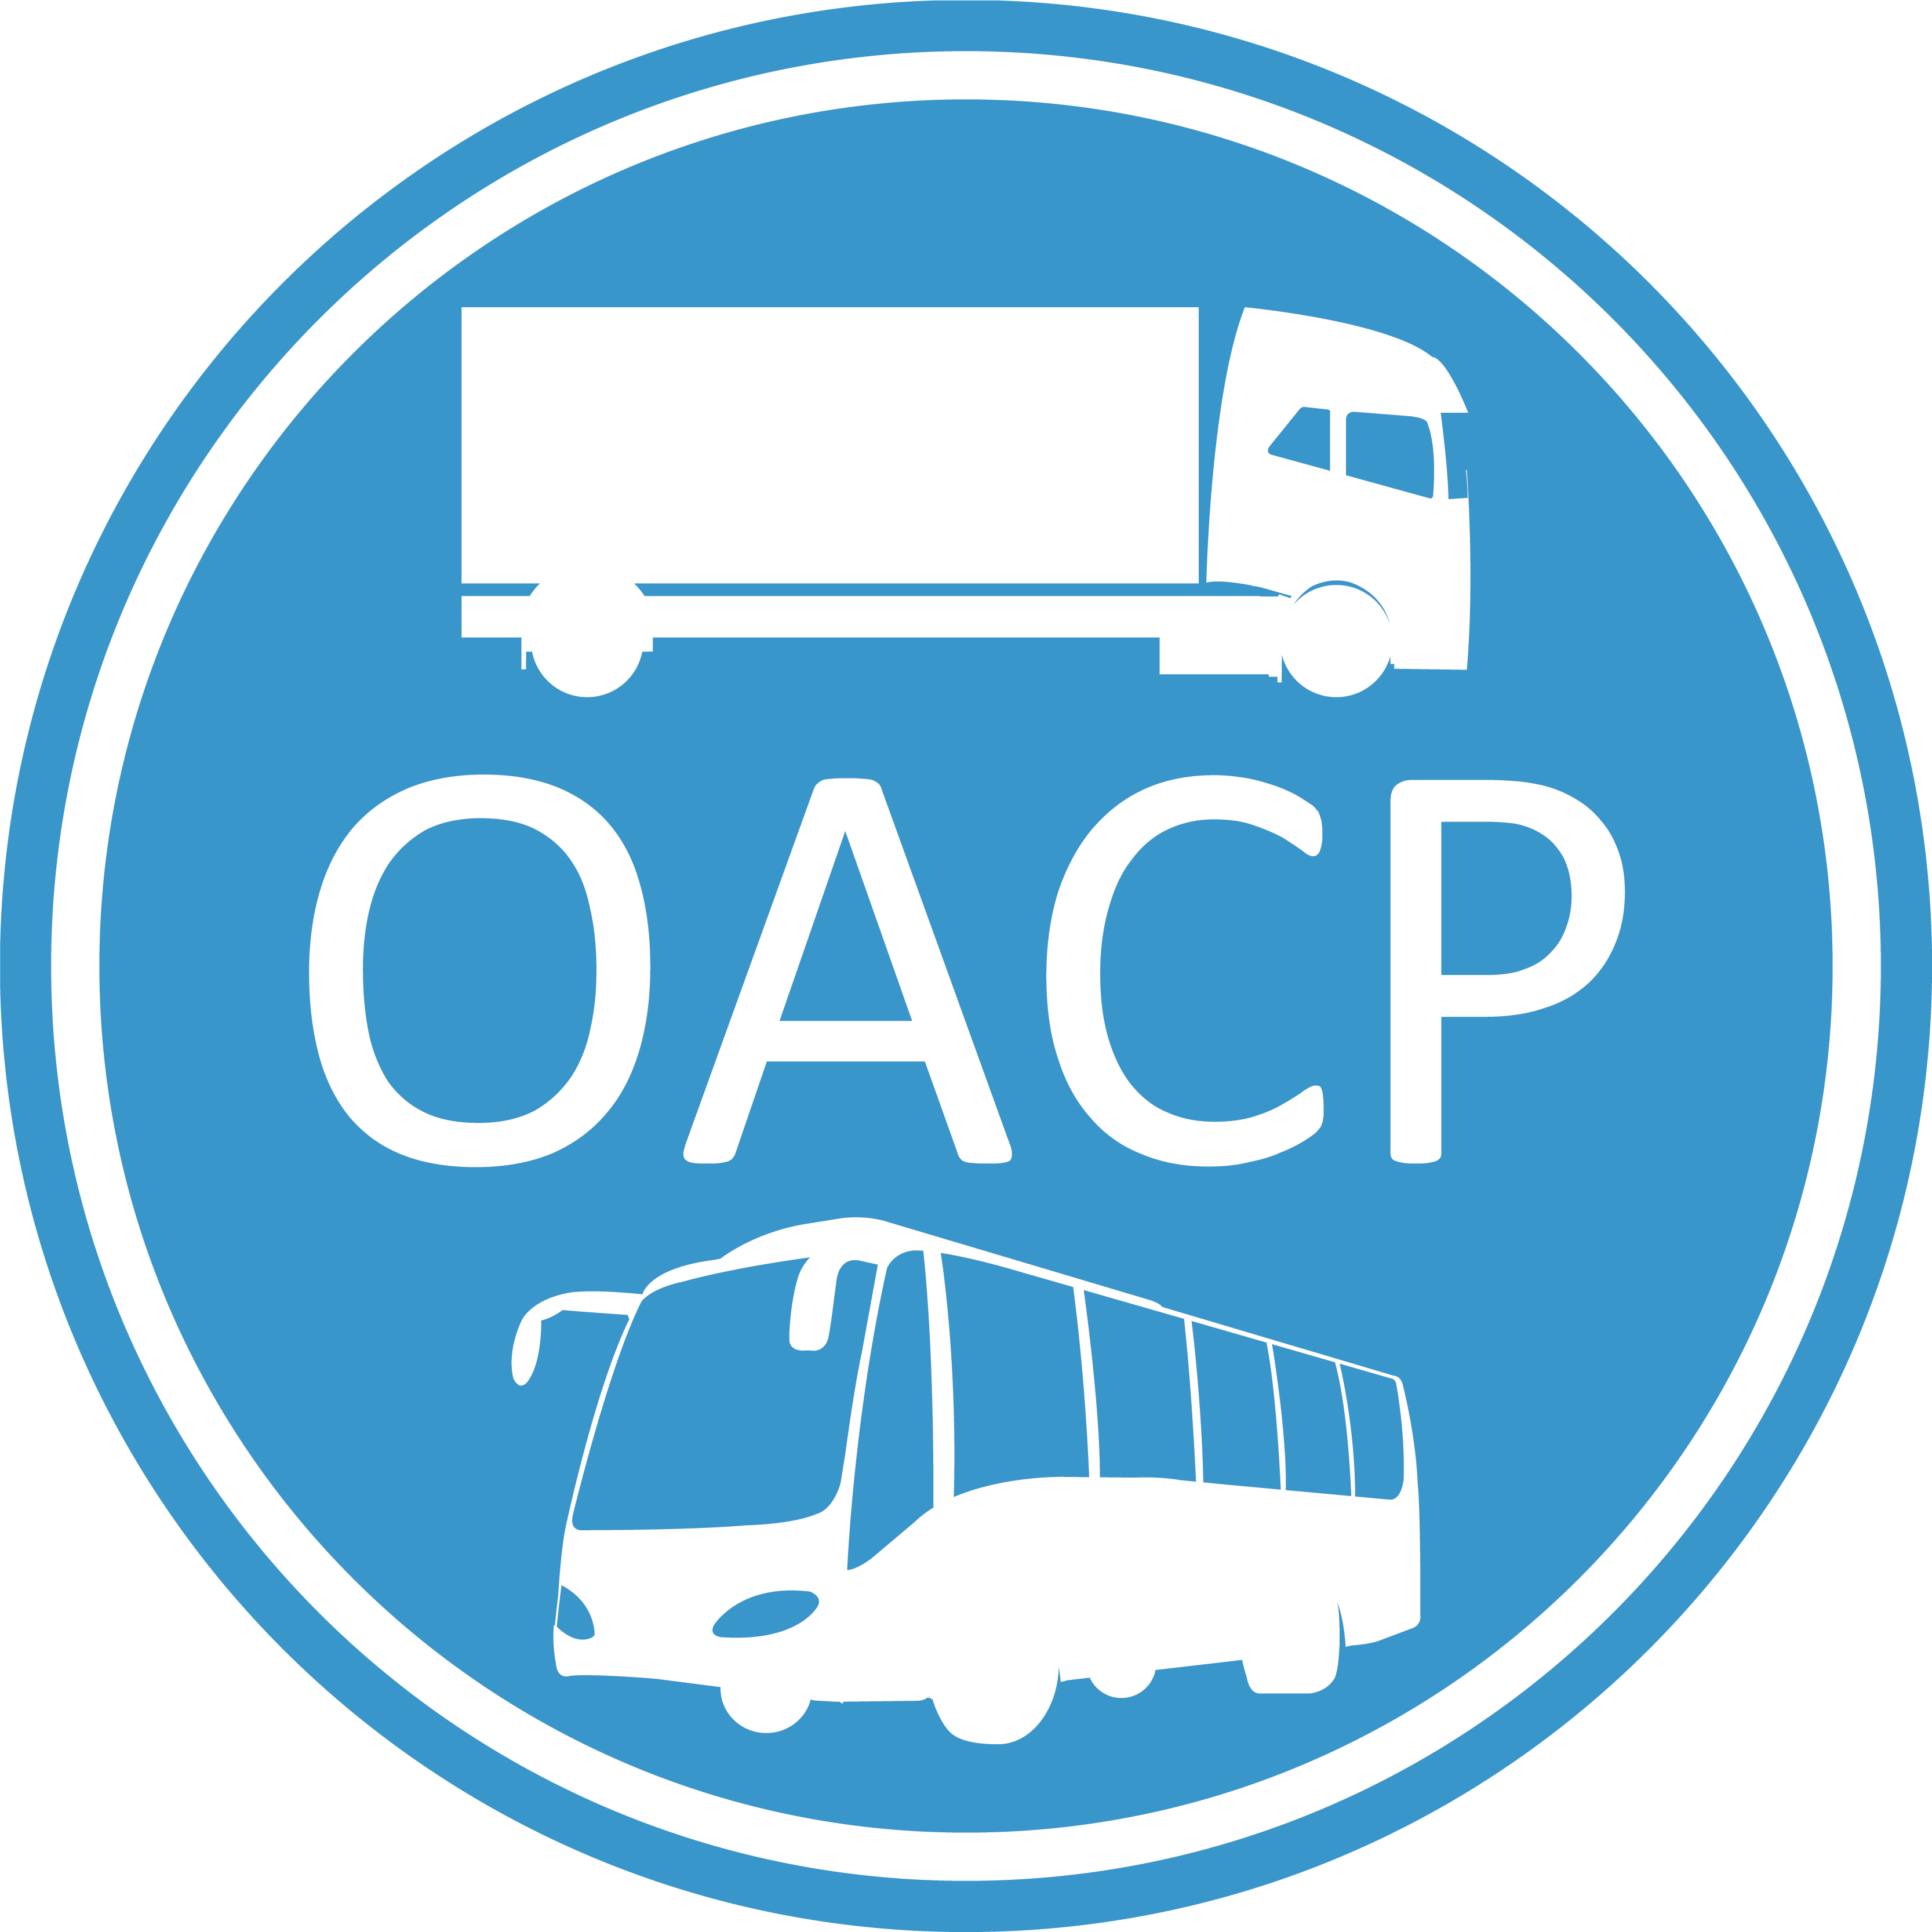 OACP Certificat: Cours de BASE (Préparation aux examens)